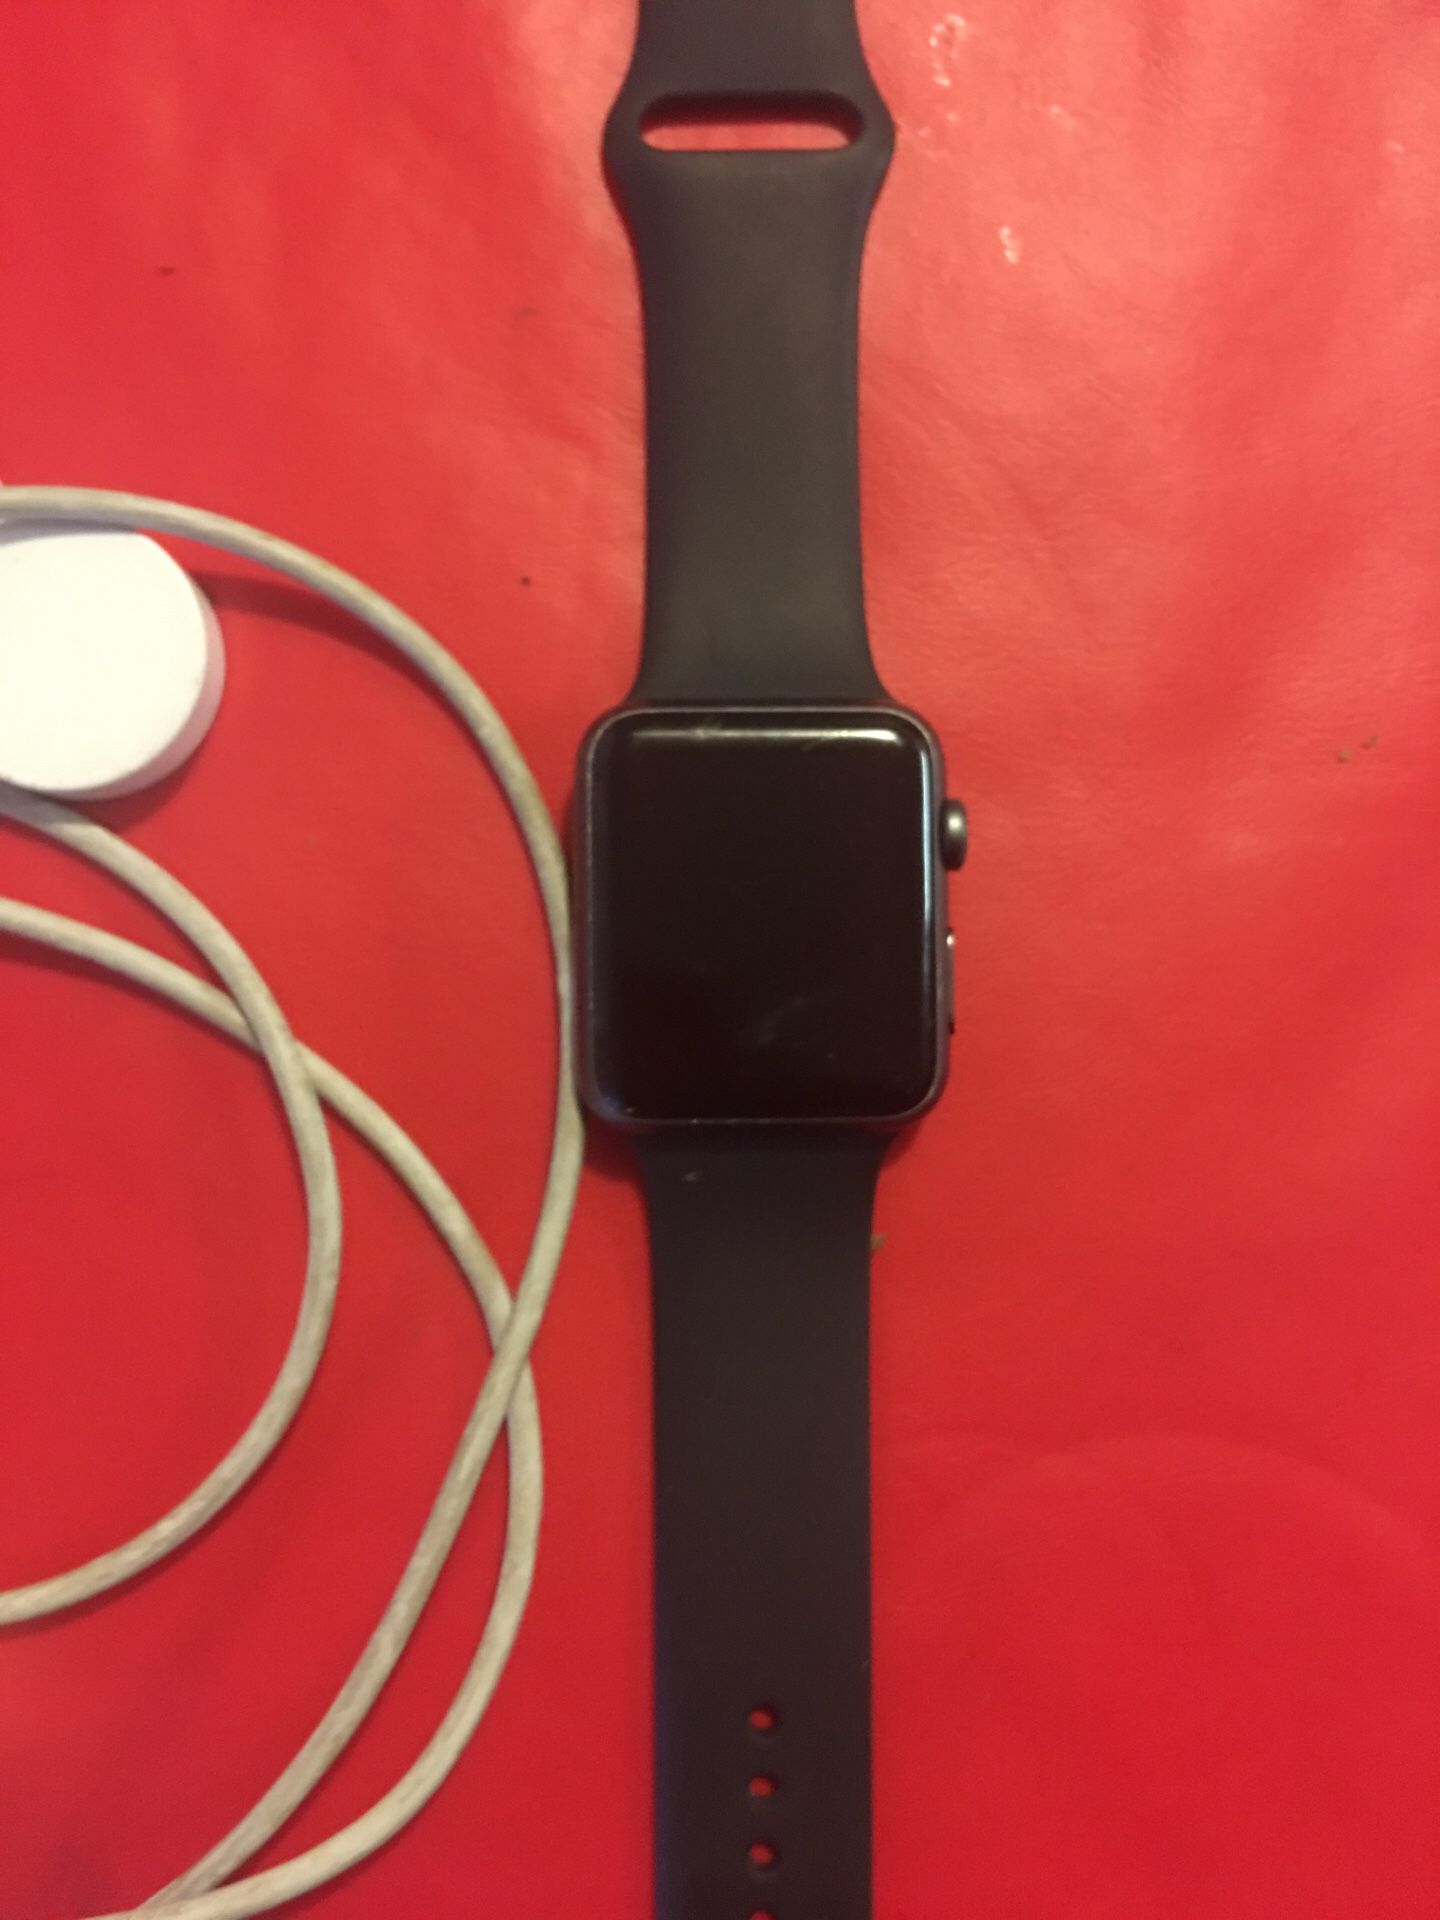 42mm Series 1 Apple Watch no iCloud lock!!!